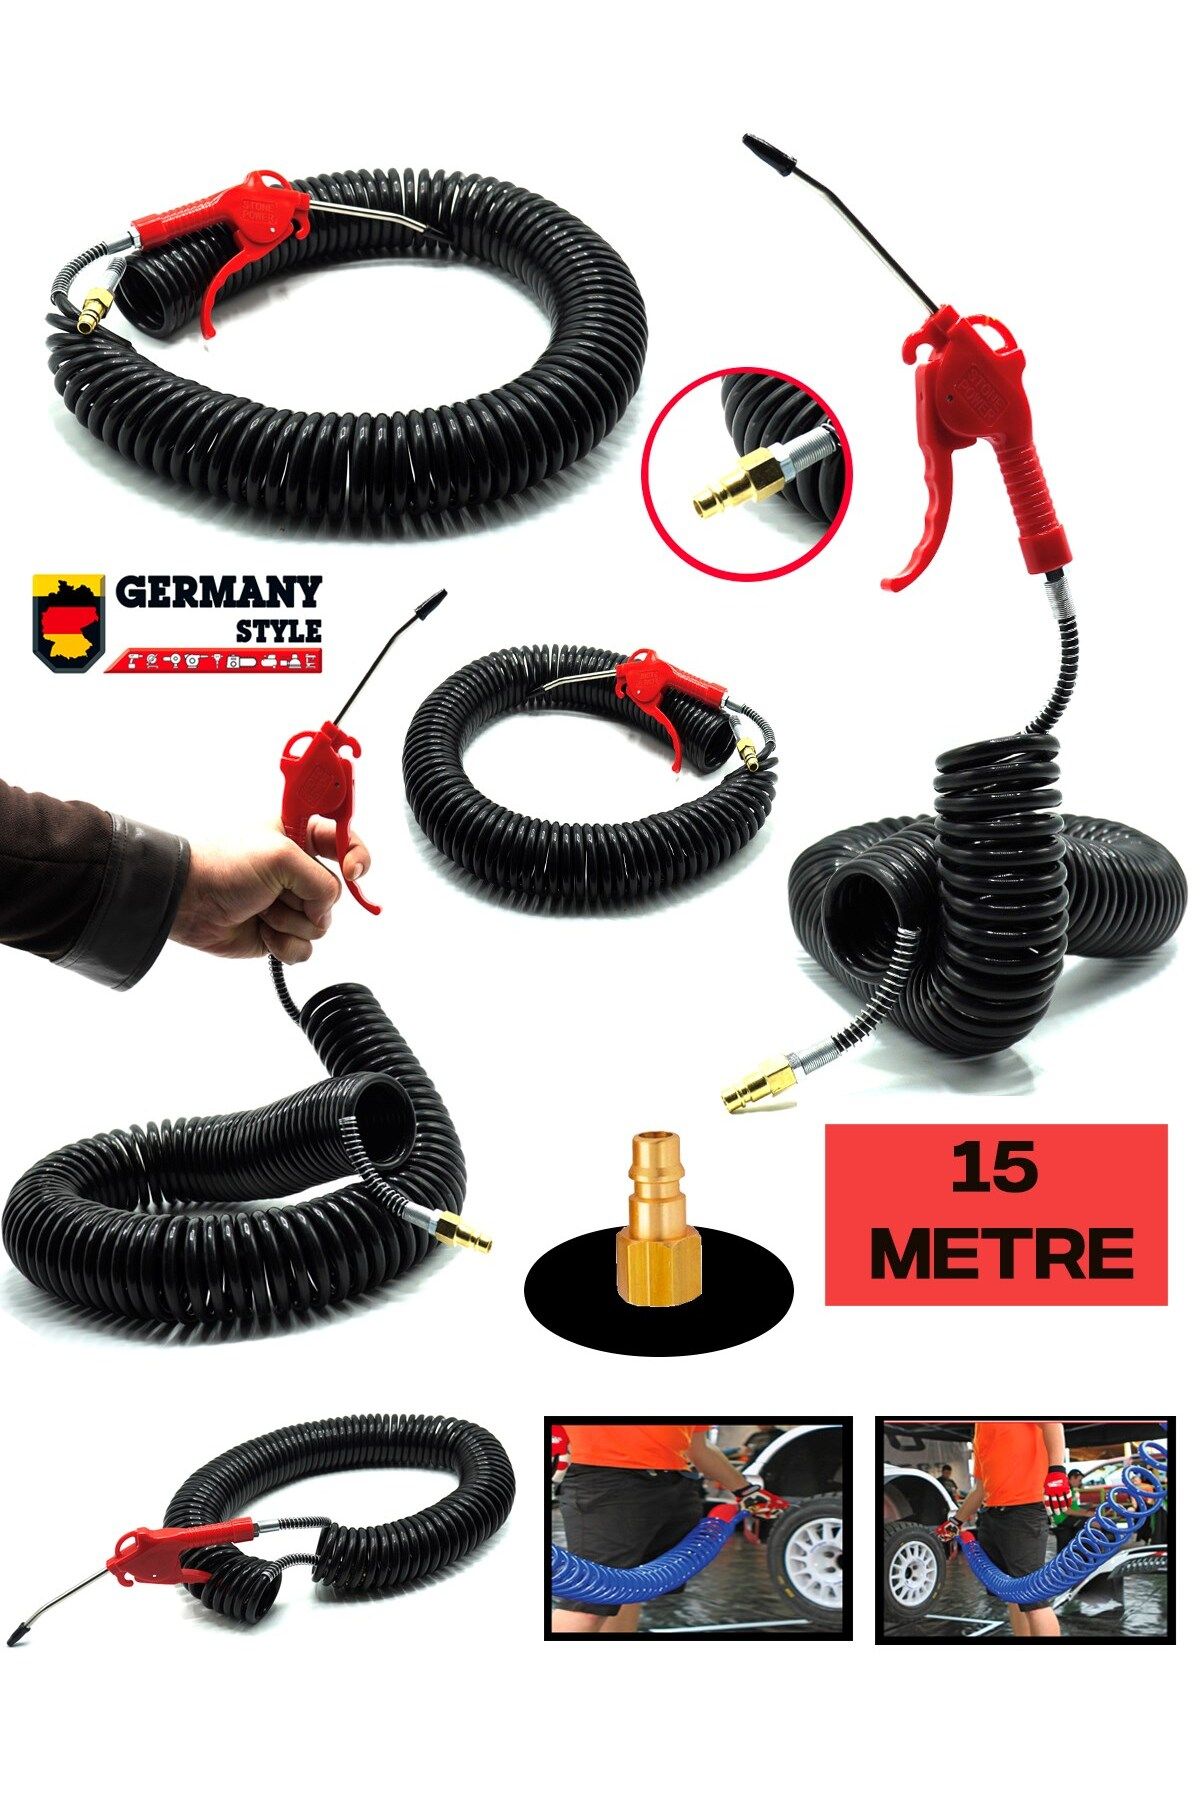 Germany Style BIGWORKER Yüksek Kalite 15 Metre Spiral Hortum ve Hava Tabancası Seti